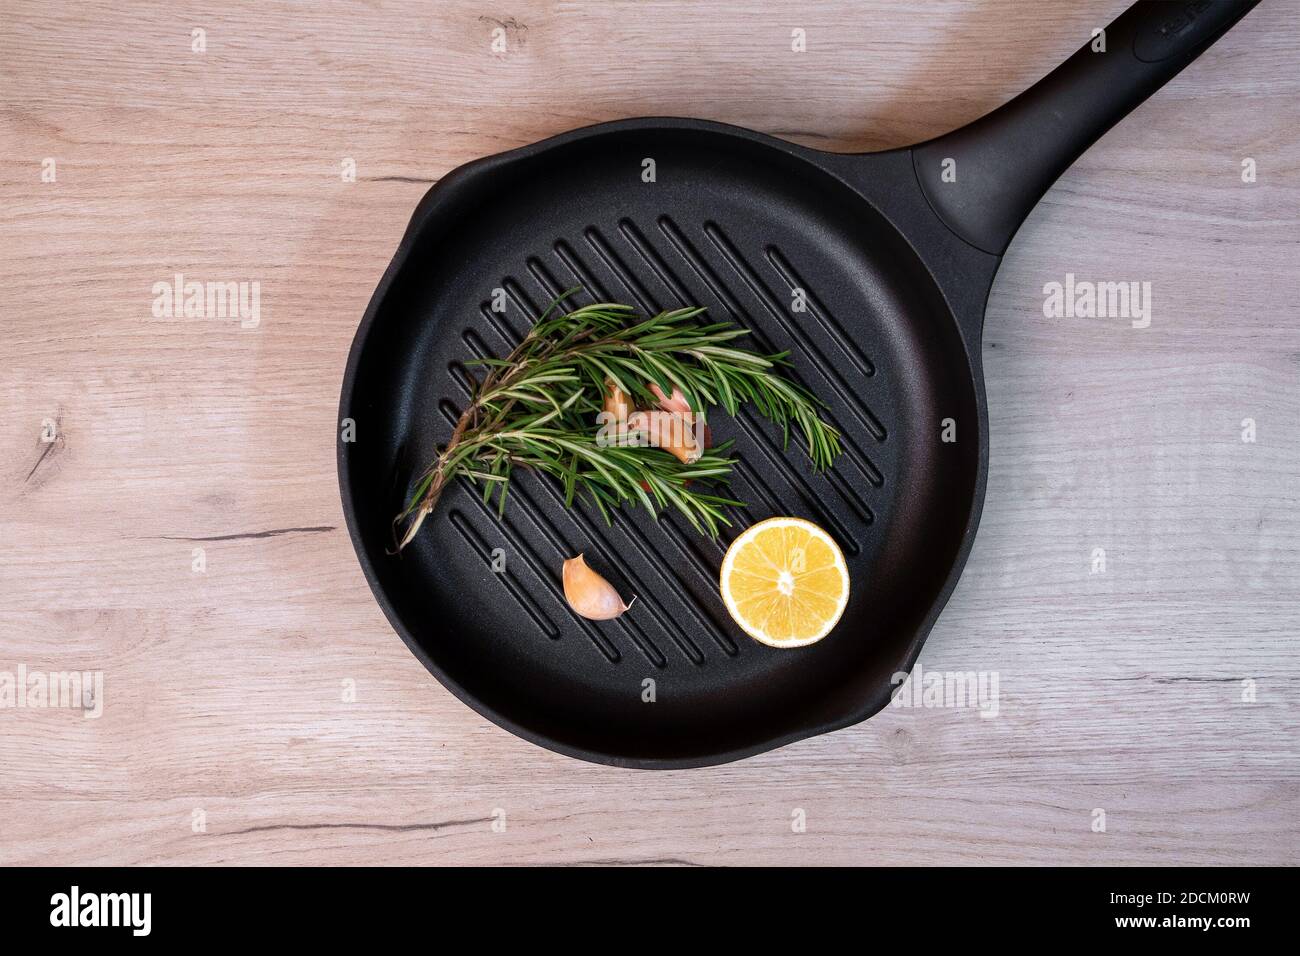 Poêle à frire noire sur une planche de bois avec des branches de romarin, des gousses d'ail et une moitié de citron à l'intérieur Banque D'Images